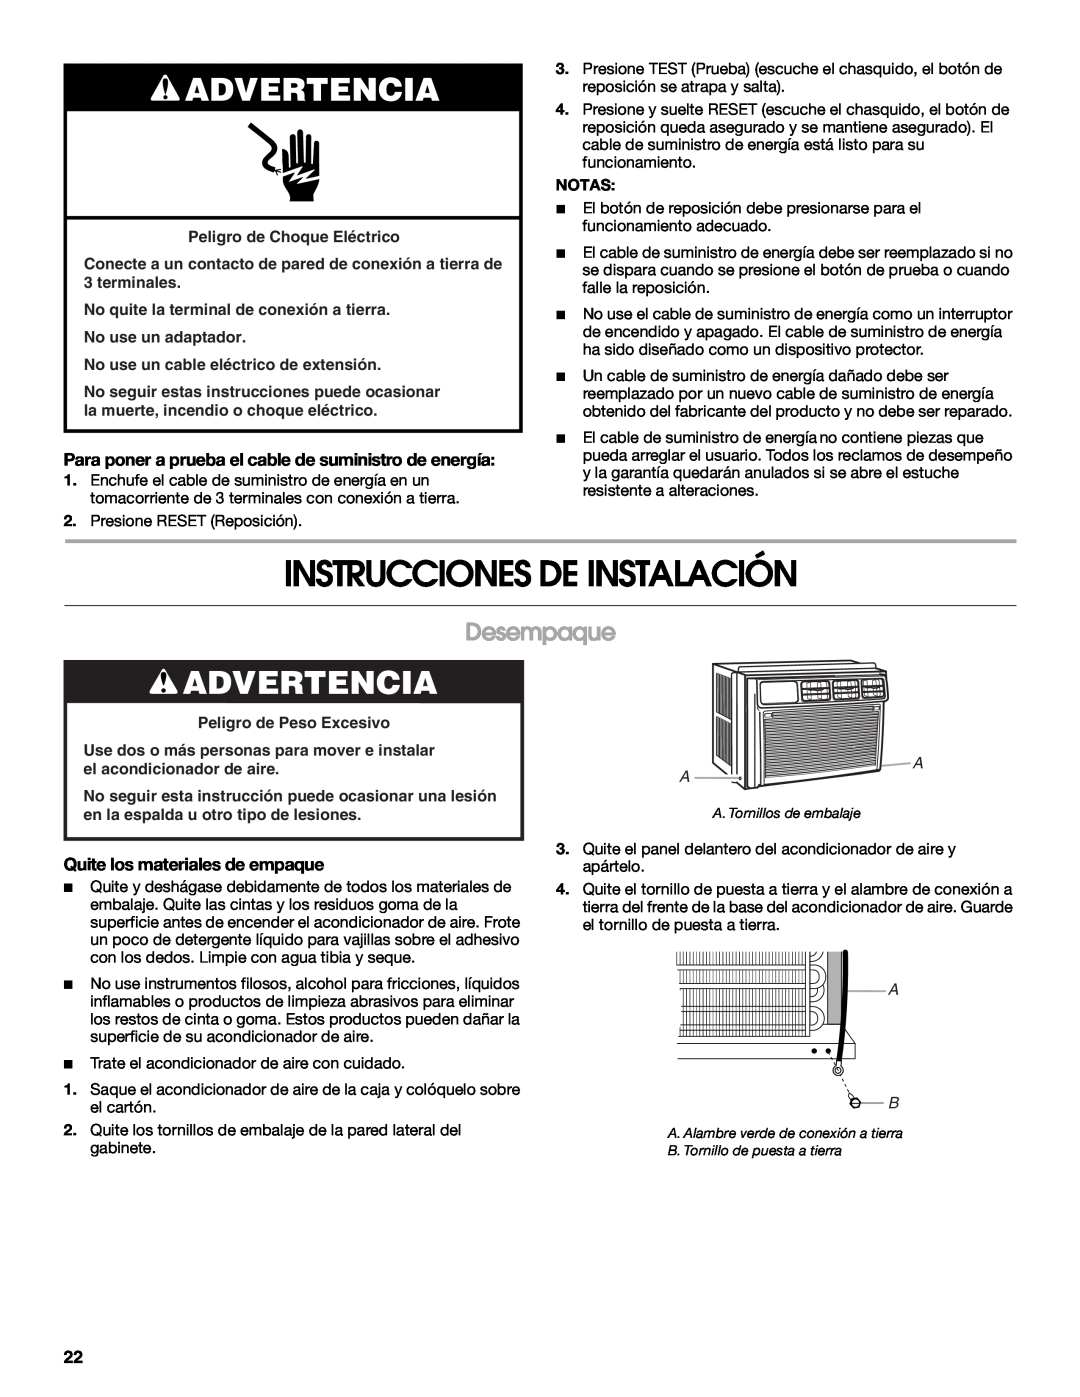 Whirlpool ACE184XR0 manual Instrucciones De Instalación, Desempaque, Quite los materiales de empaque, Advertencia 